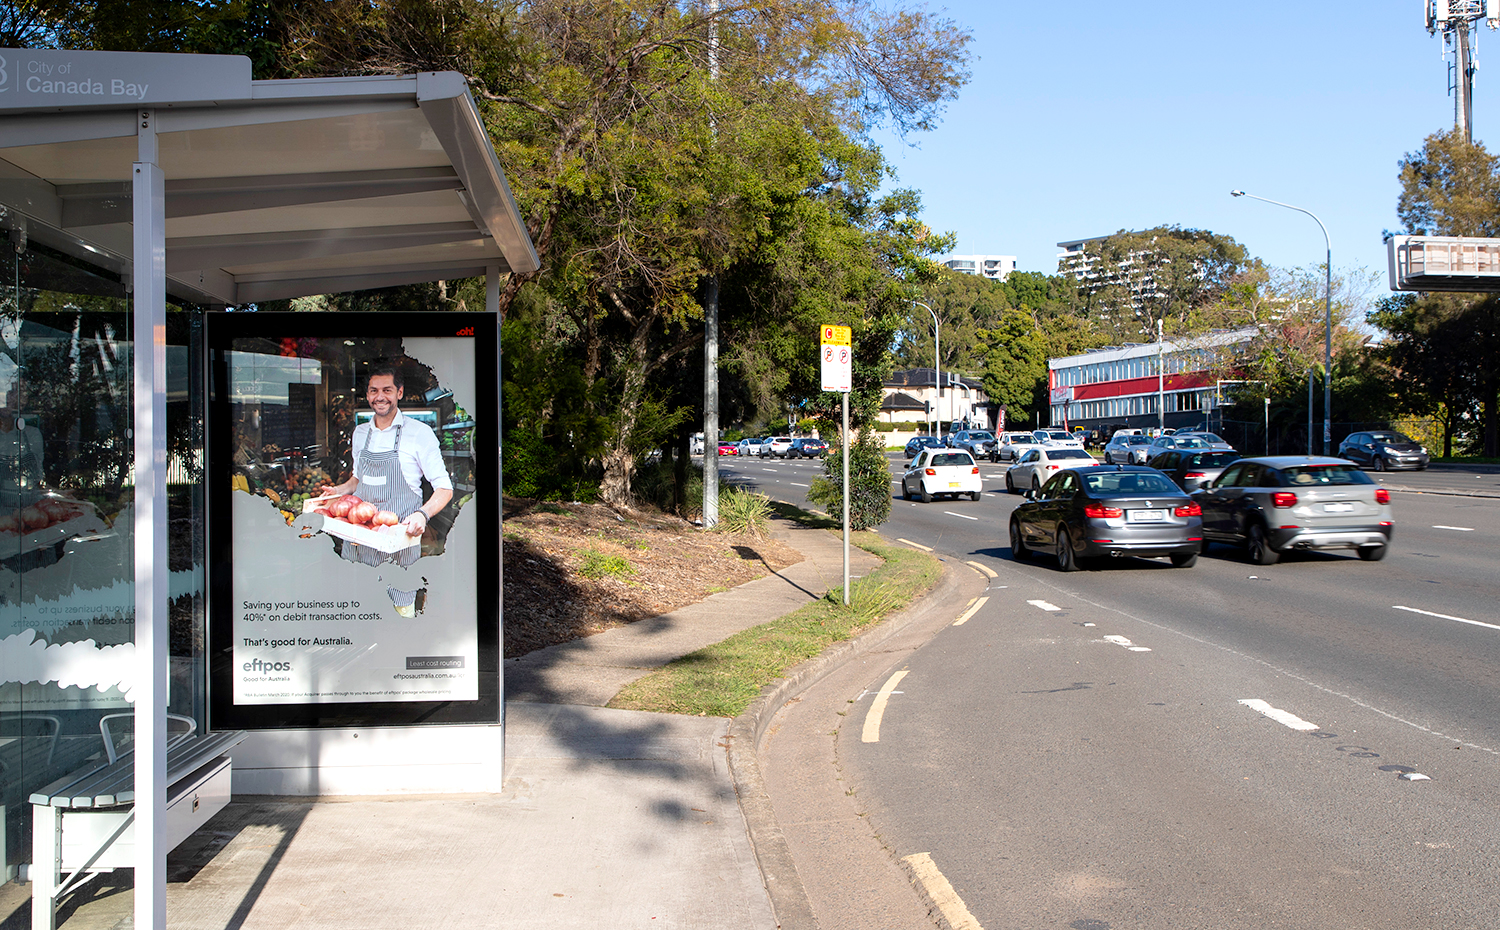 Eftpos bus shelter advertising on street furniture